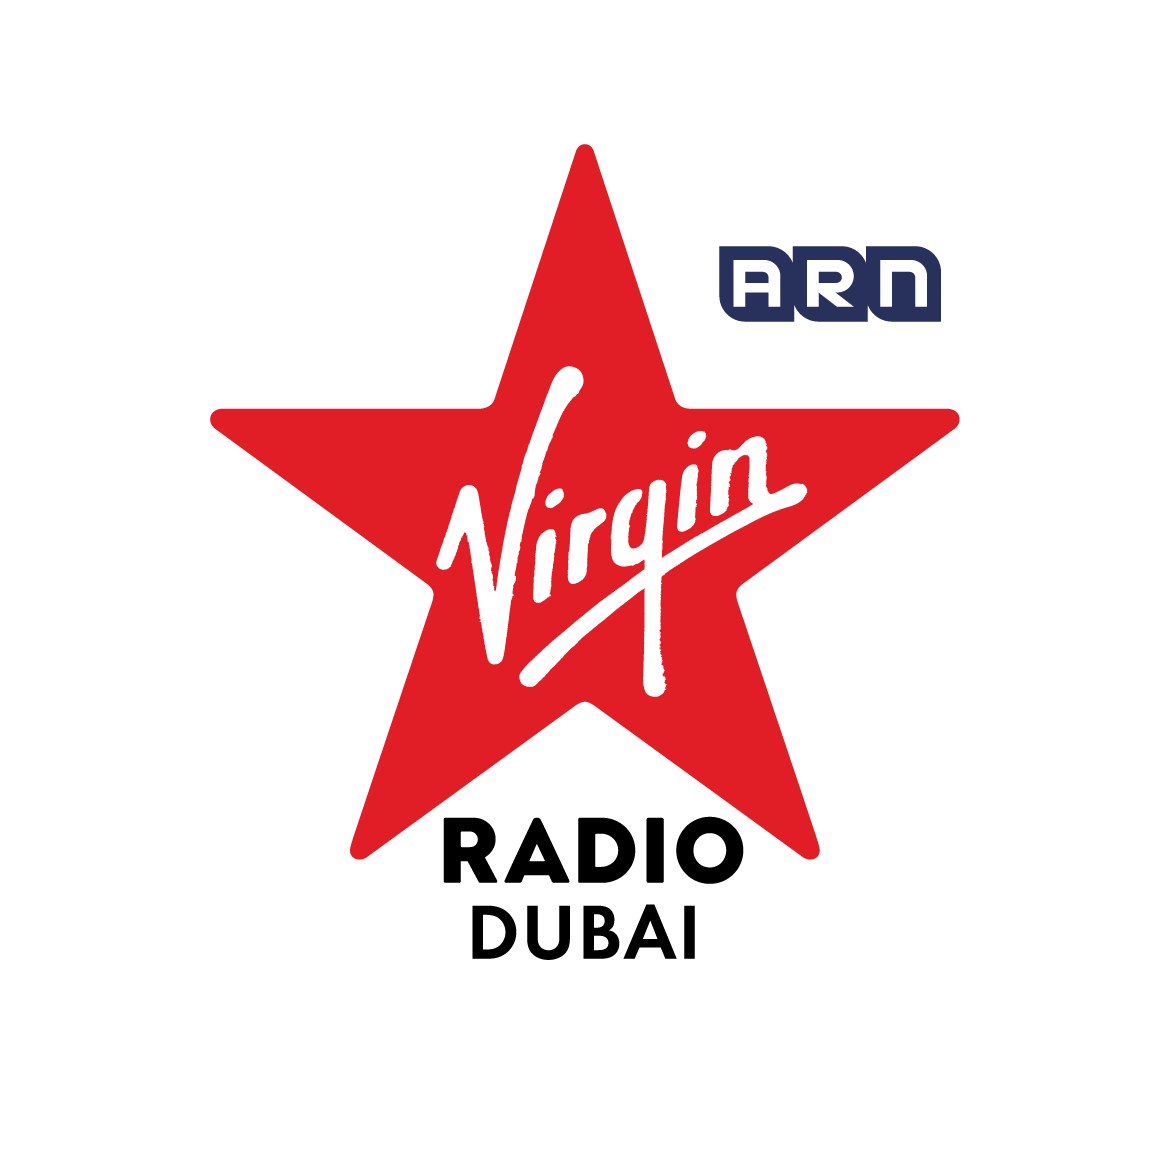 Virgin radio dubai